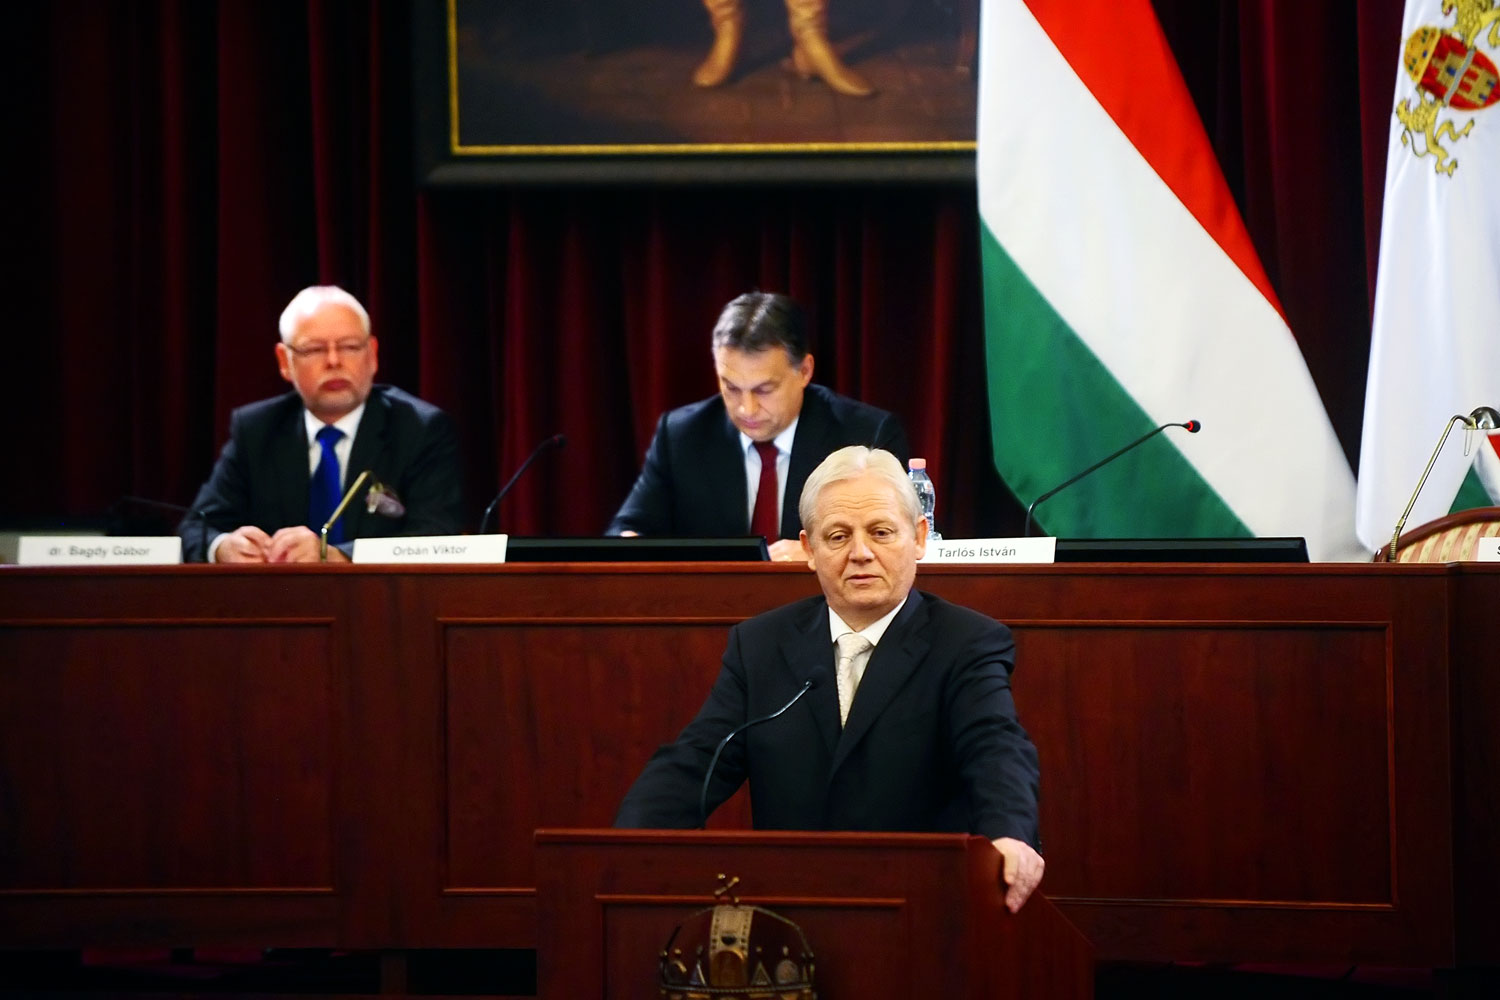 Fentről lefelé: Orbán Viktor, Tarlós István, korona